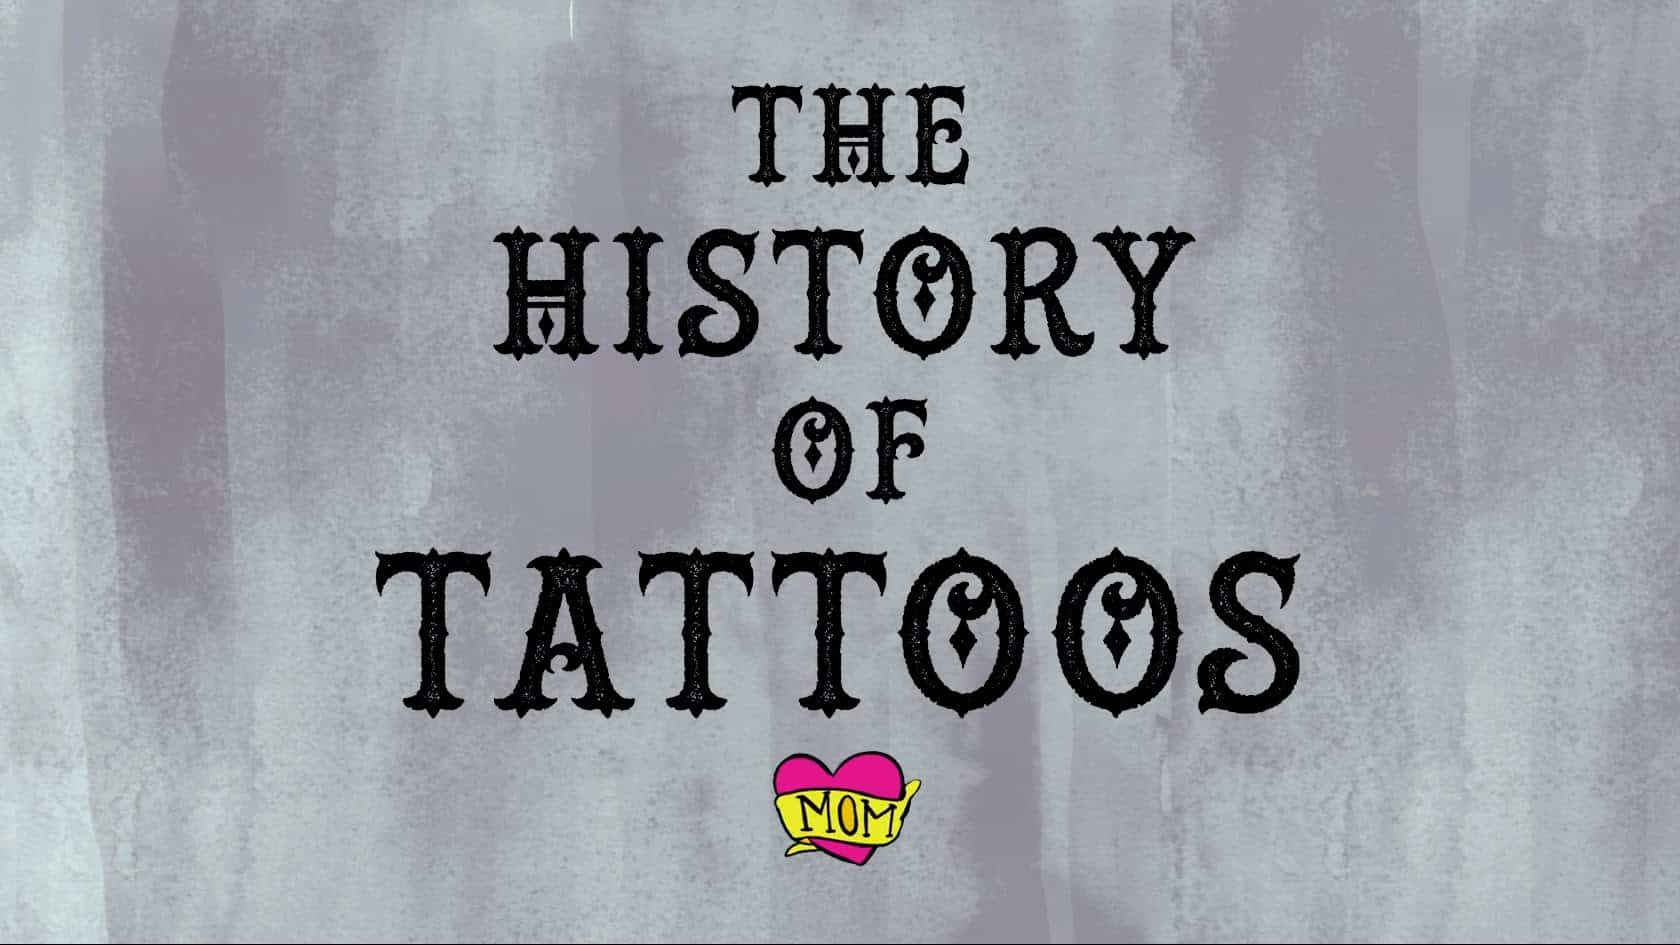 Geschiedenis van tatoeages - De geschiedenis van tatoeages